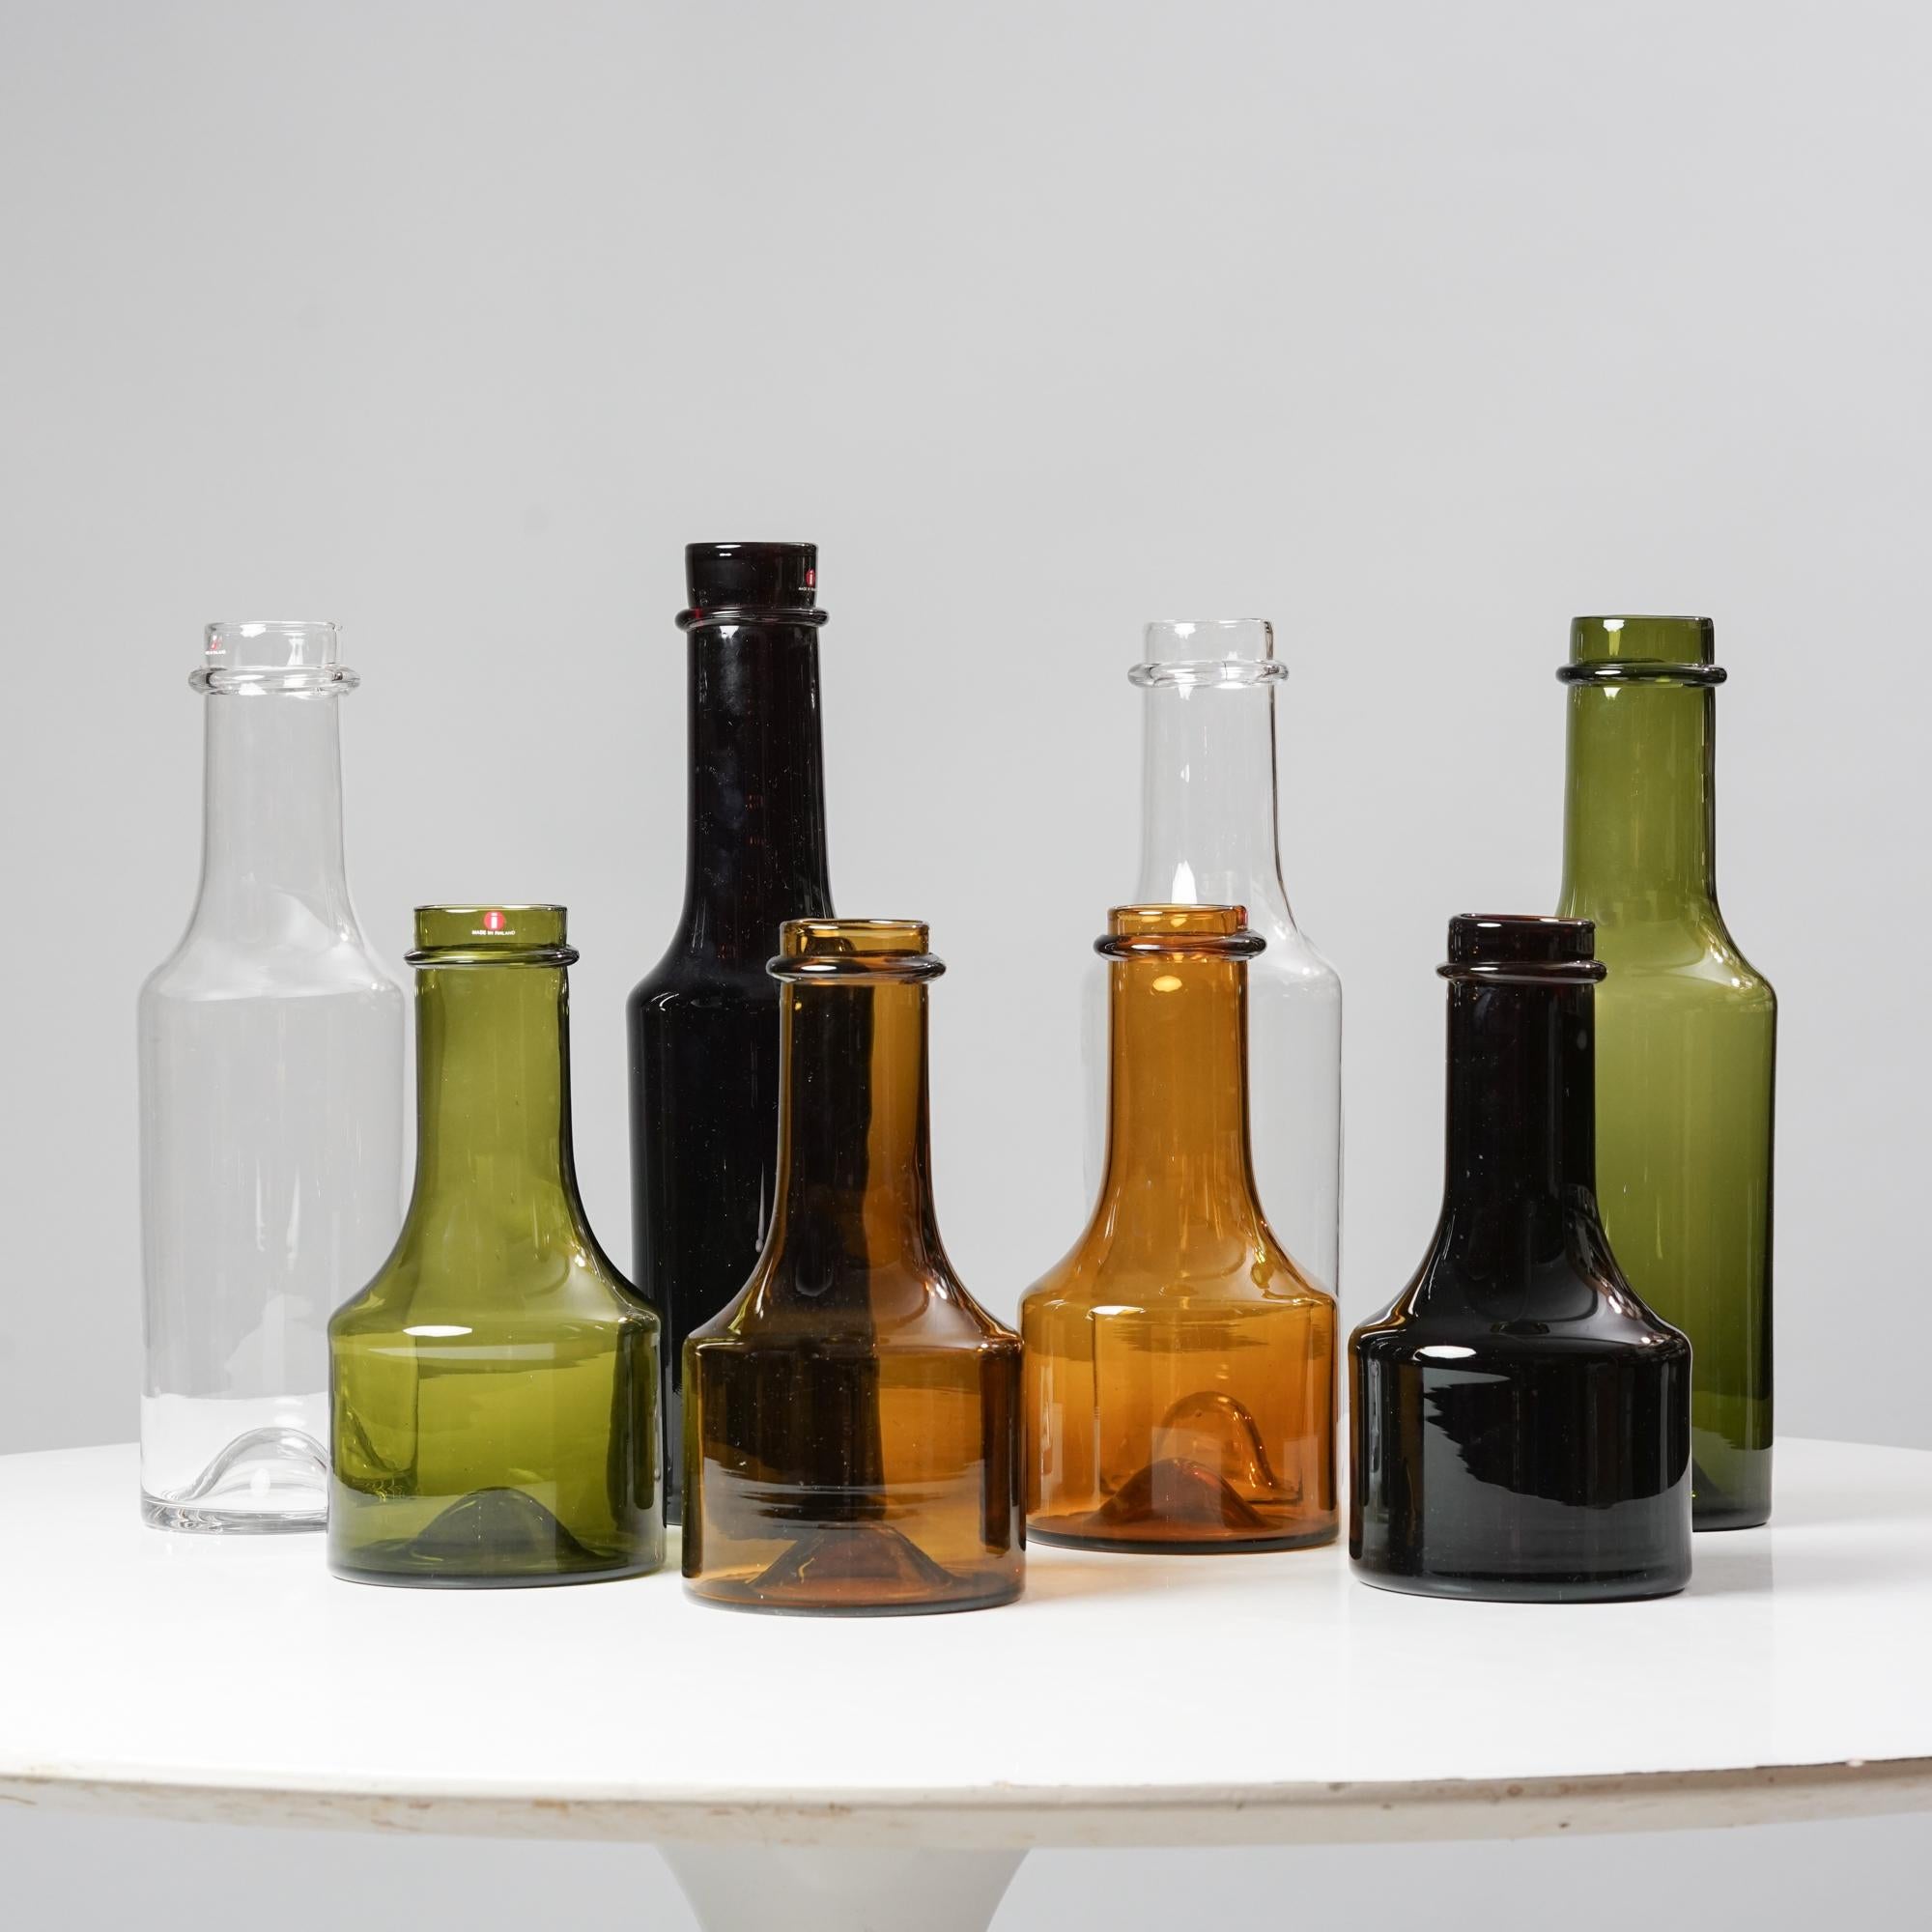 Flaschenset Modelle 2507 & 2508 entworfen von Tapio Wirkkala, hergestellt von Iittala, Mitte des 20. Jahrhunderts. Das Set enthält 8 Flaschen. Markiert und signiert. Guter Vintage-Zustand, leichte Patina und alters- und gebrauchsbedingte Abnutzung.